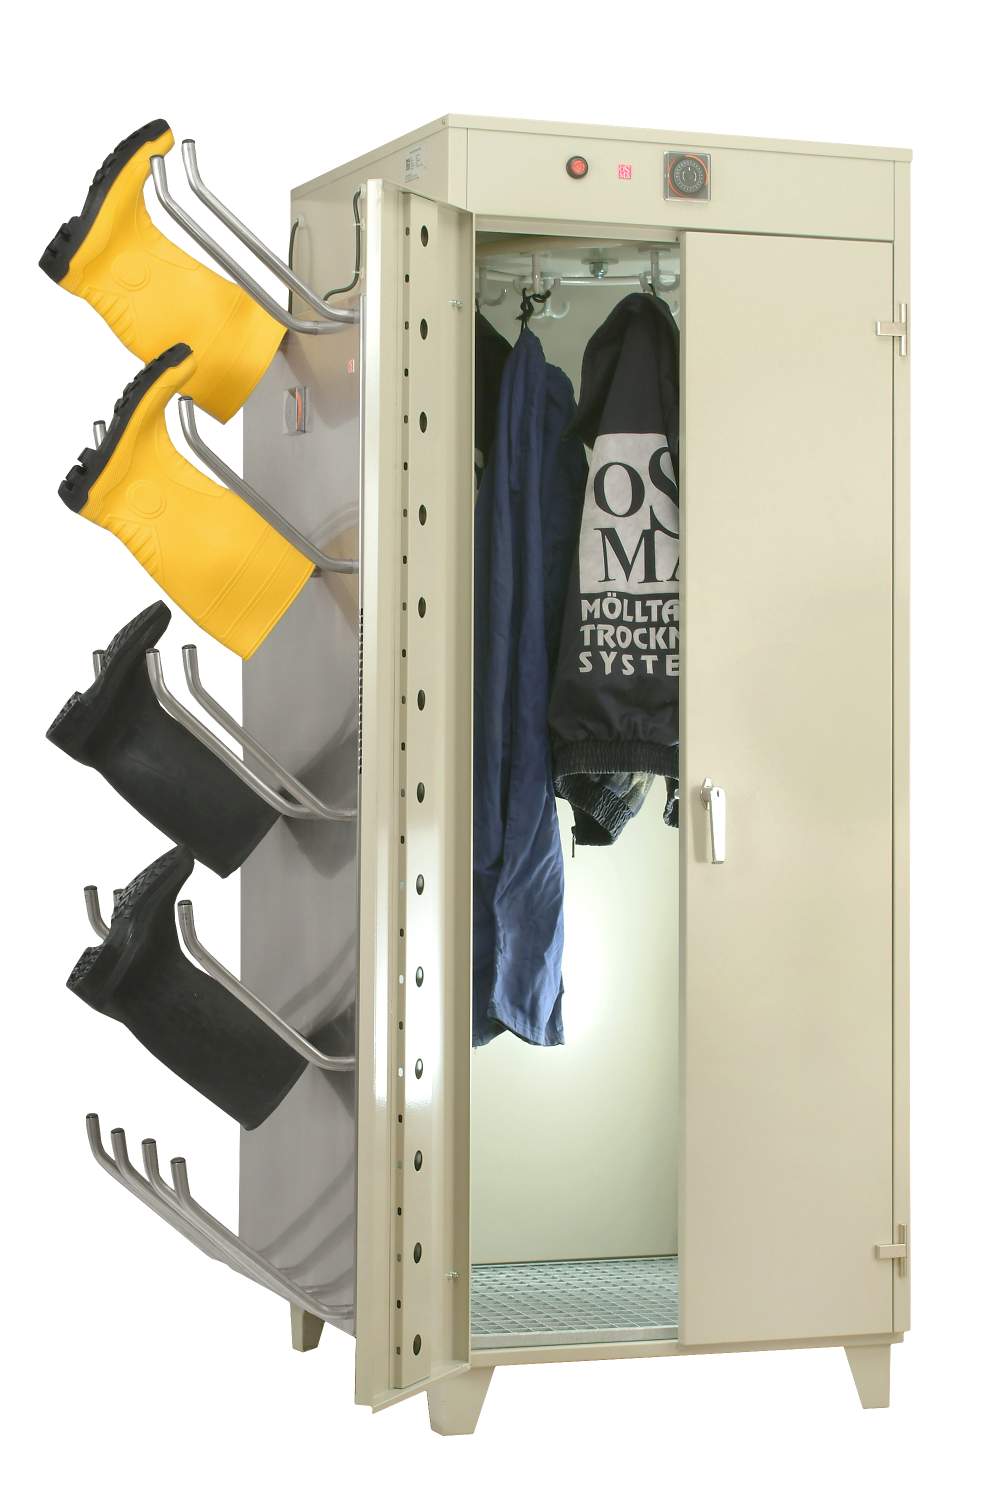 Шкаф для боевой одежды пожарного и снаряжения ПТС-74.00.510